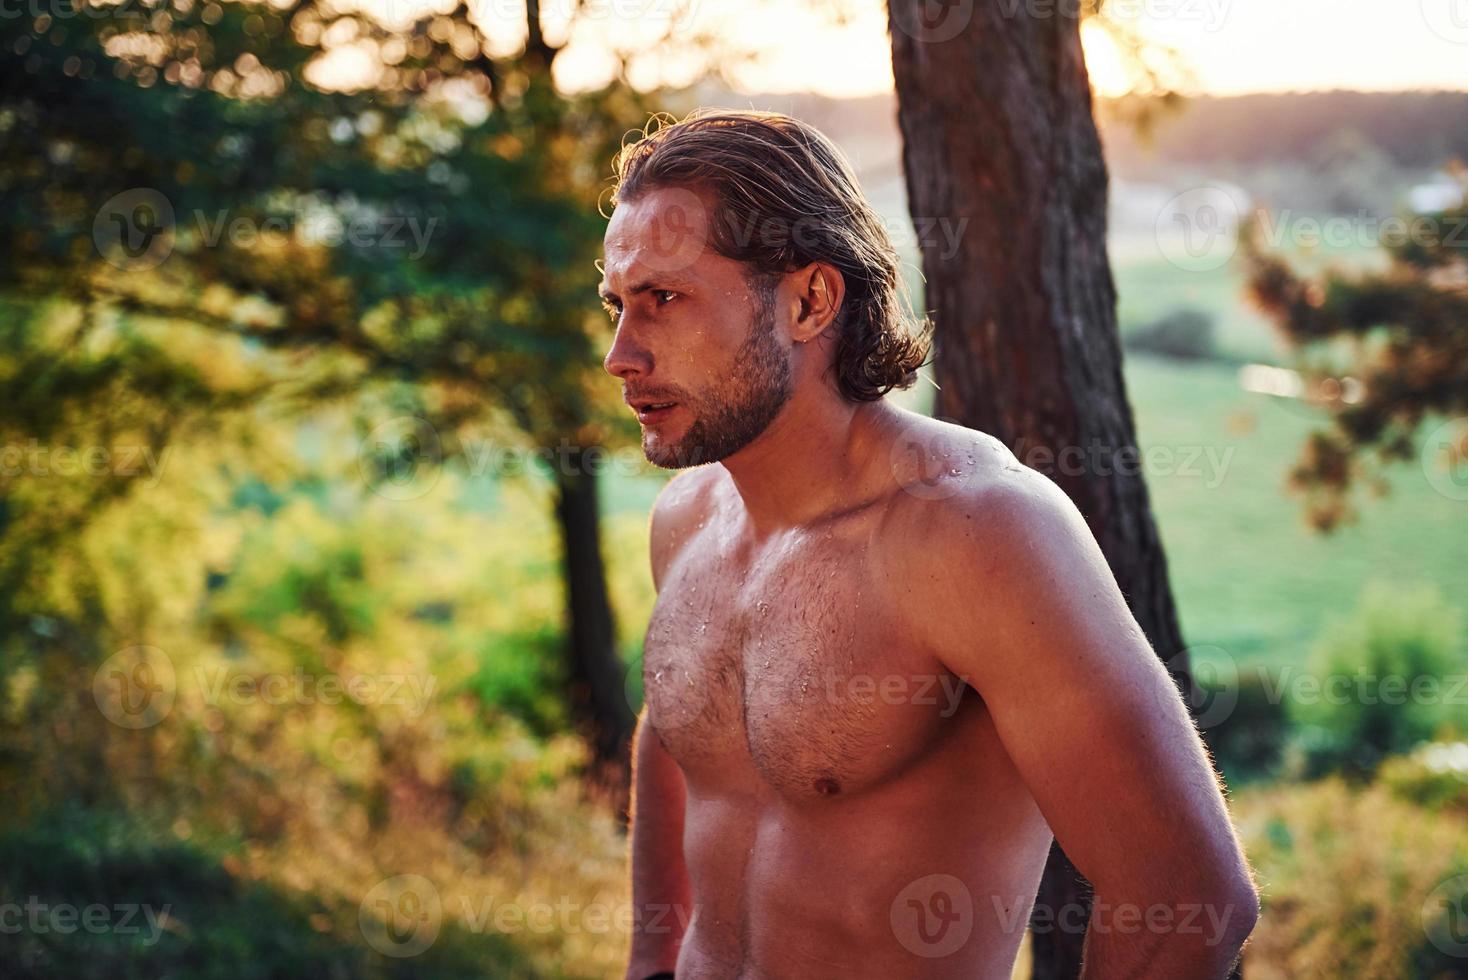 mirada seria y confiada. un hombre guapo sin camisa con un tipo de cuerpo musculoso está en el bosque durante el día foto